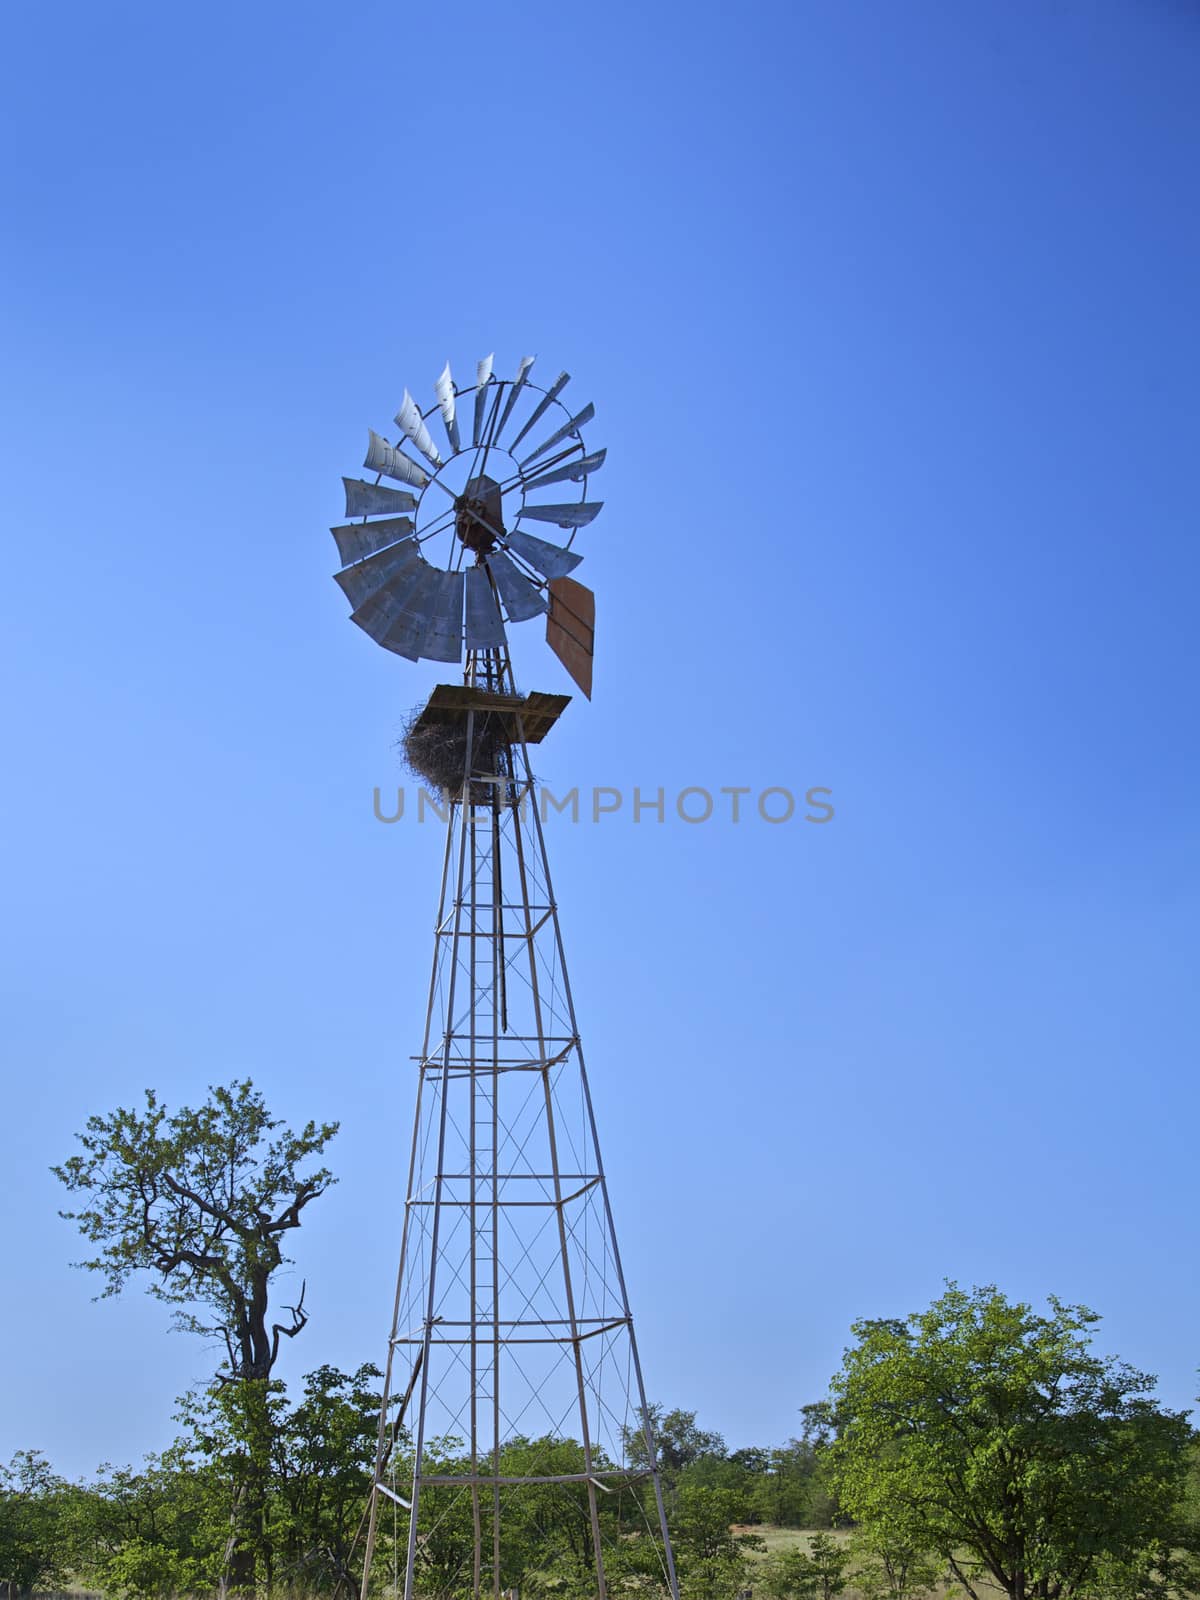 Windmill in a Rural Farm